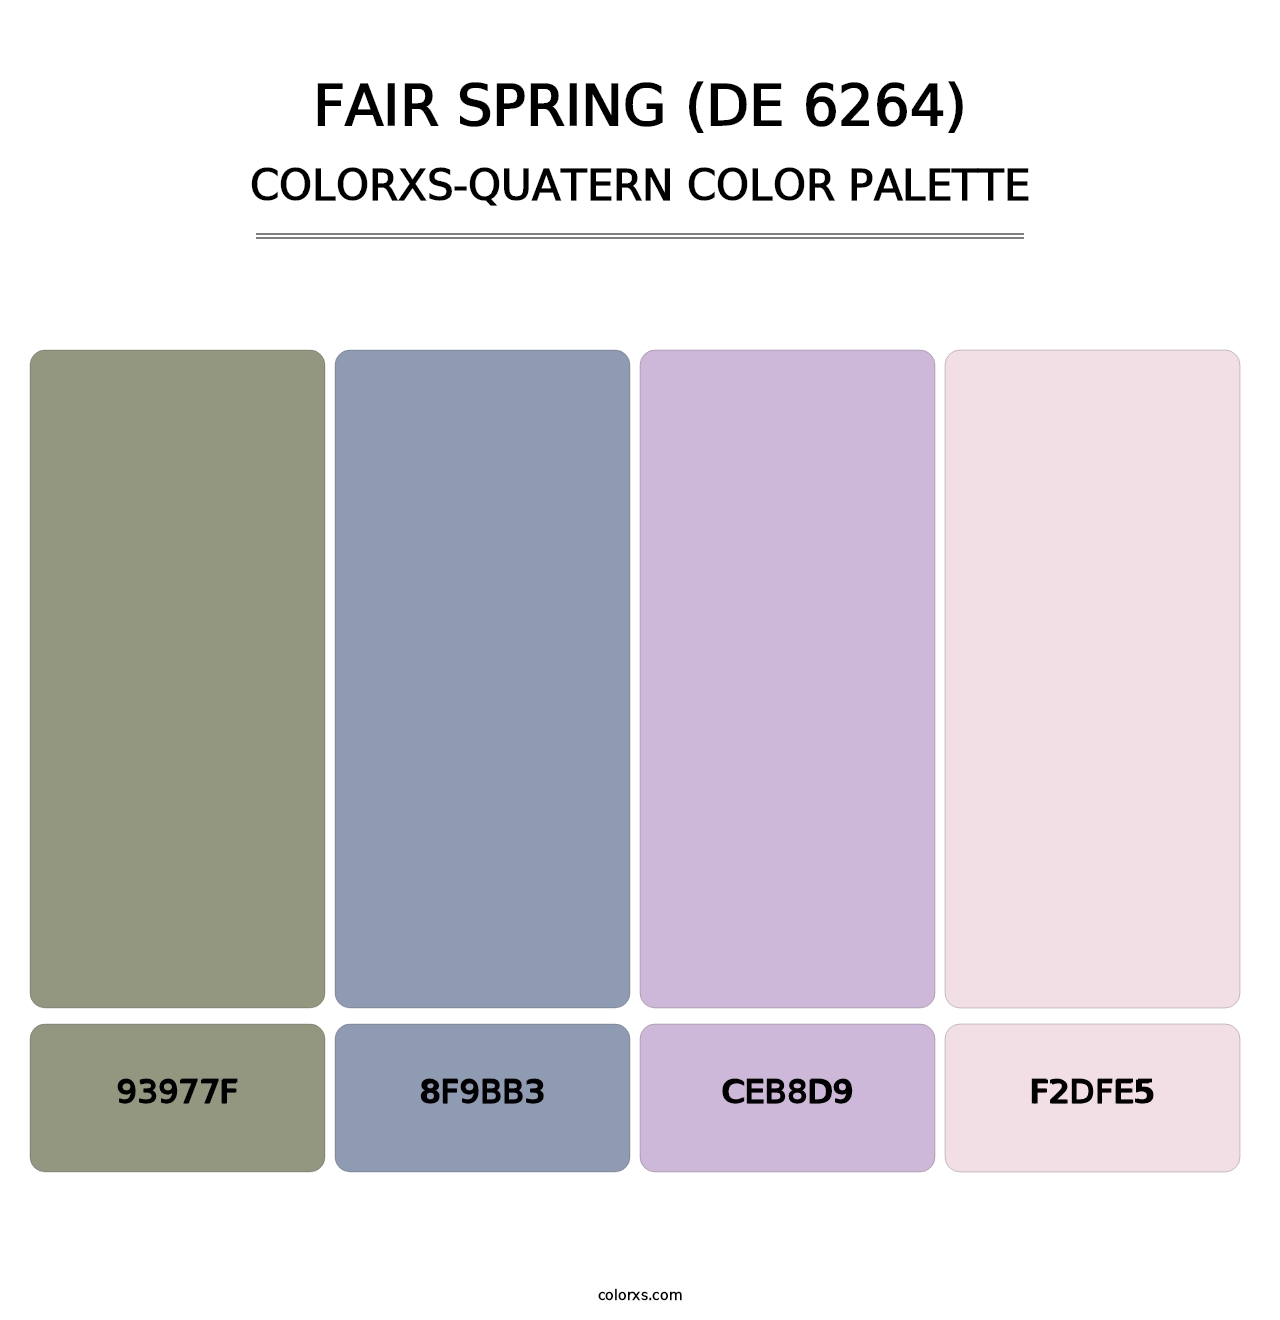 Fair Spring (DE 6264) - Colorxs Quatern Palette